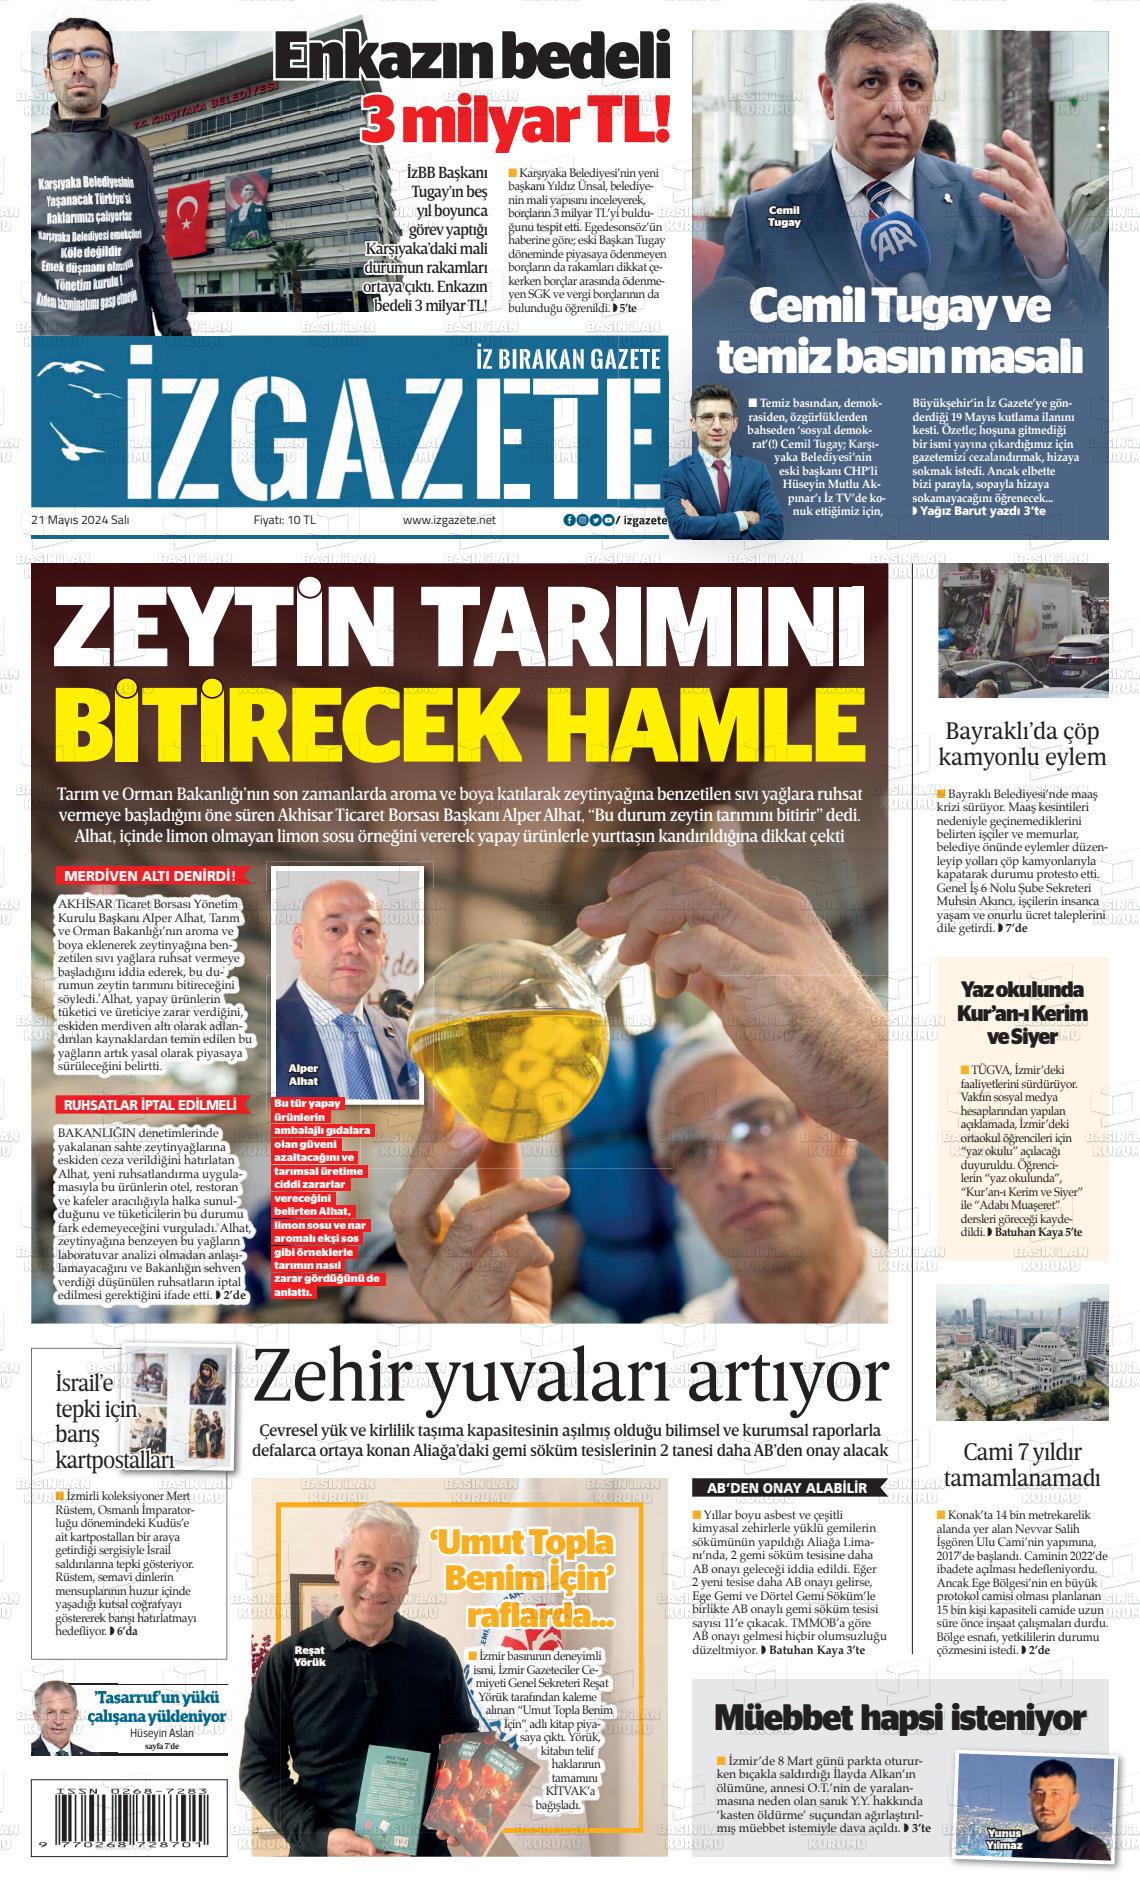 İZ GAZETE Gazetesi